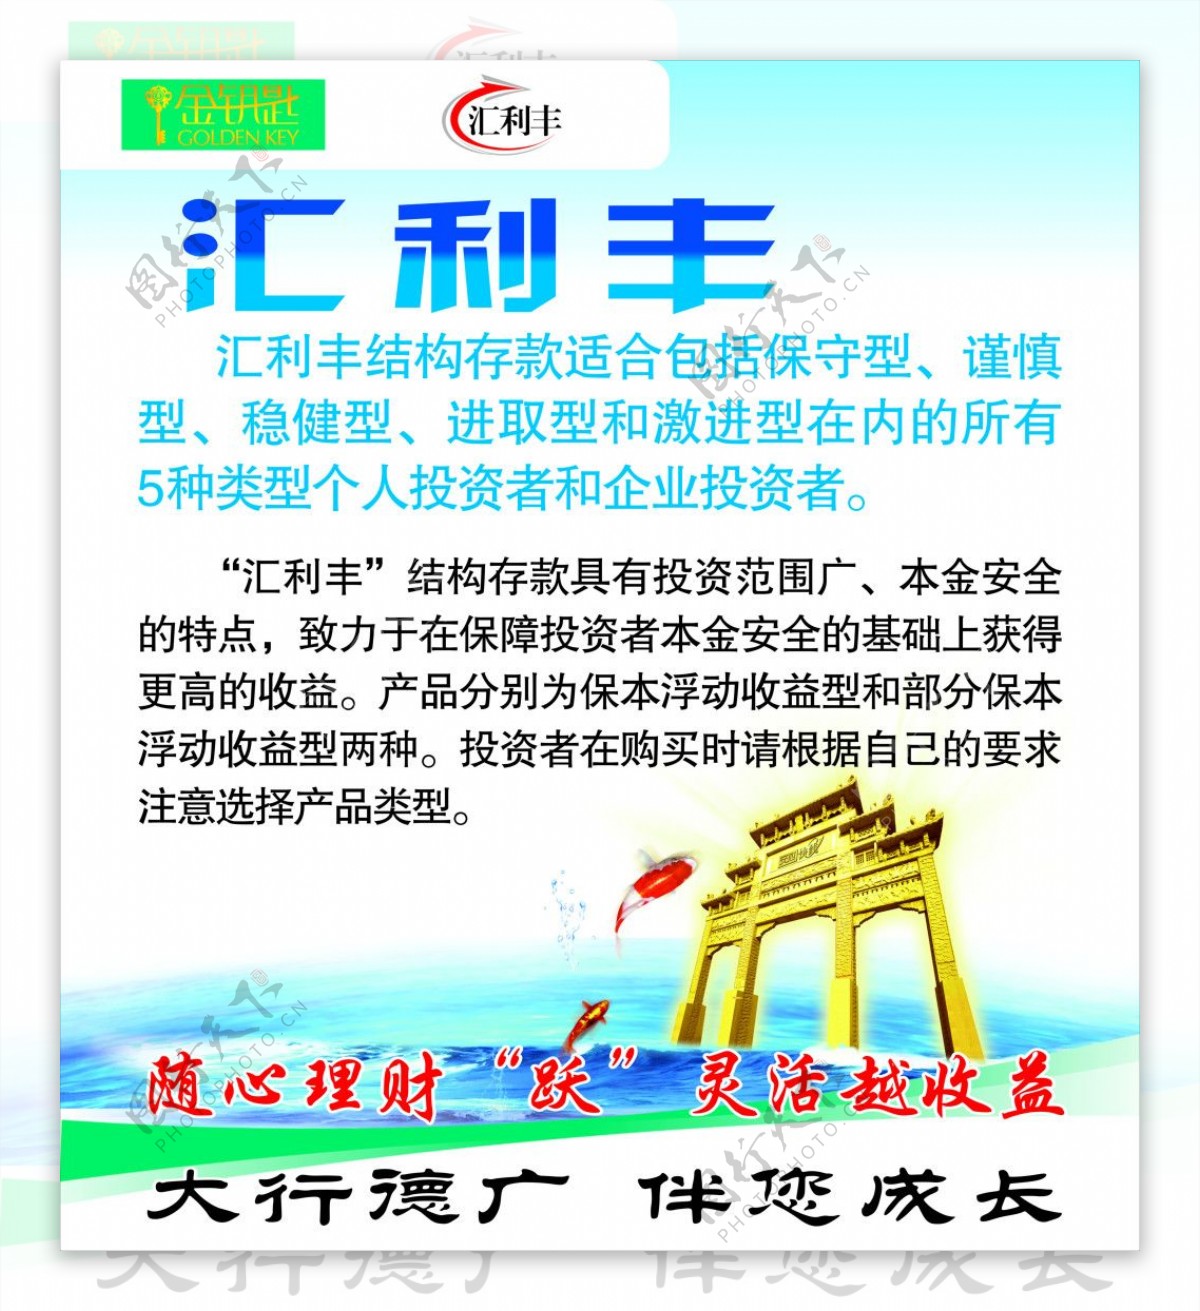 汇利丰logo海报宣传